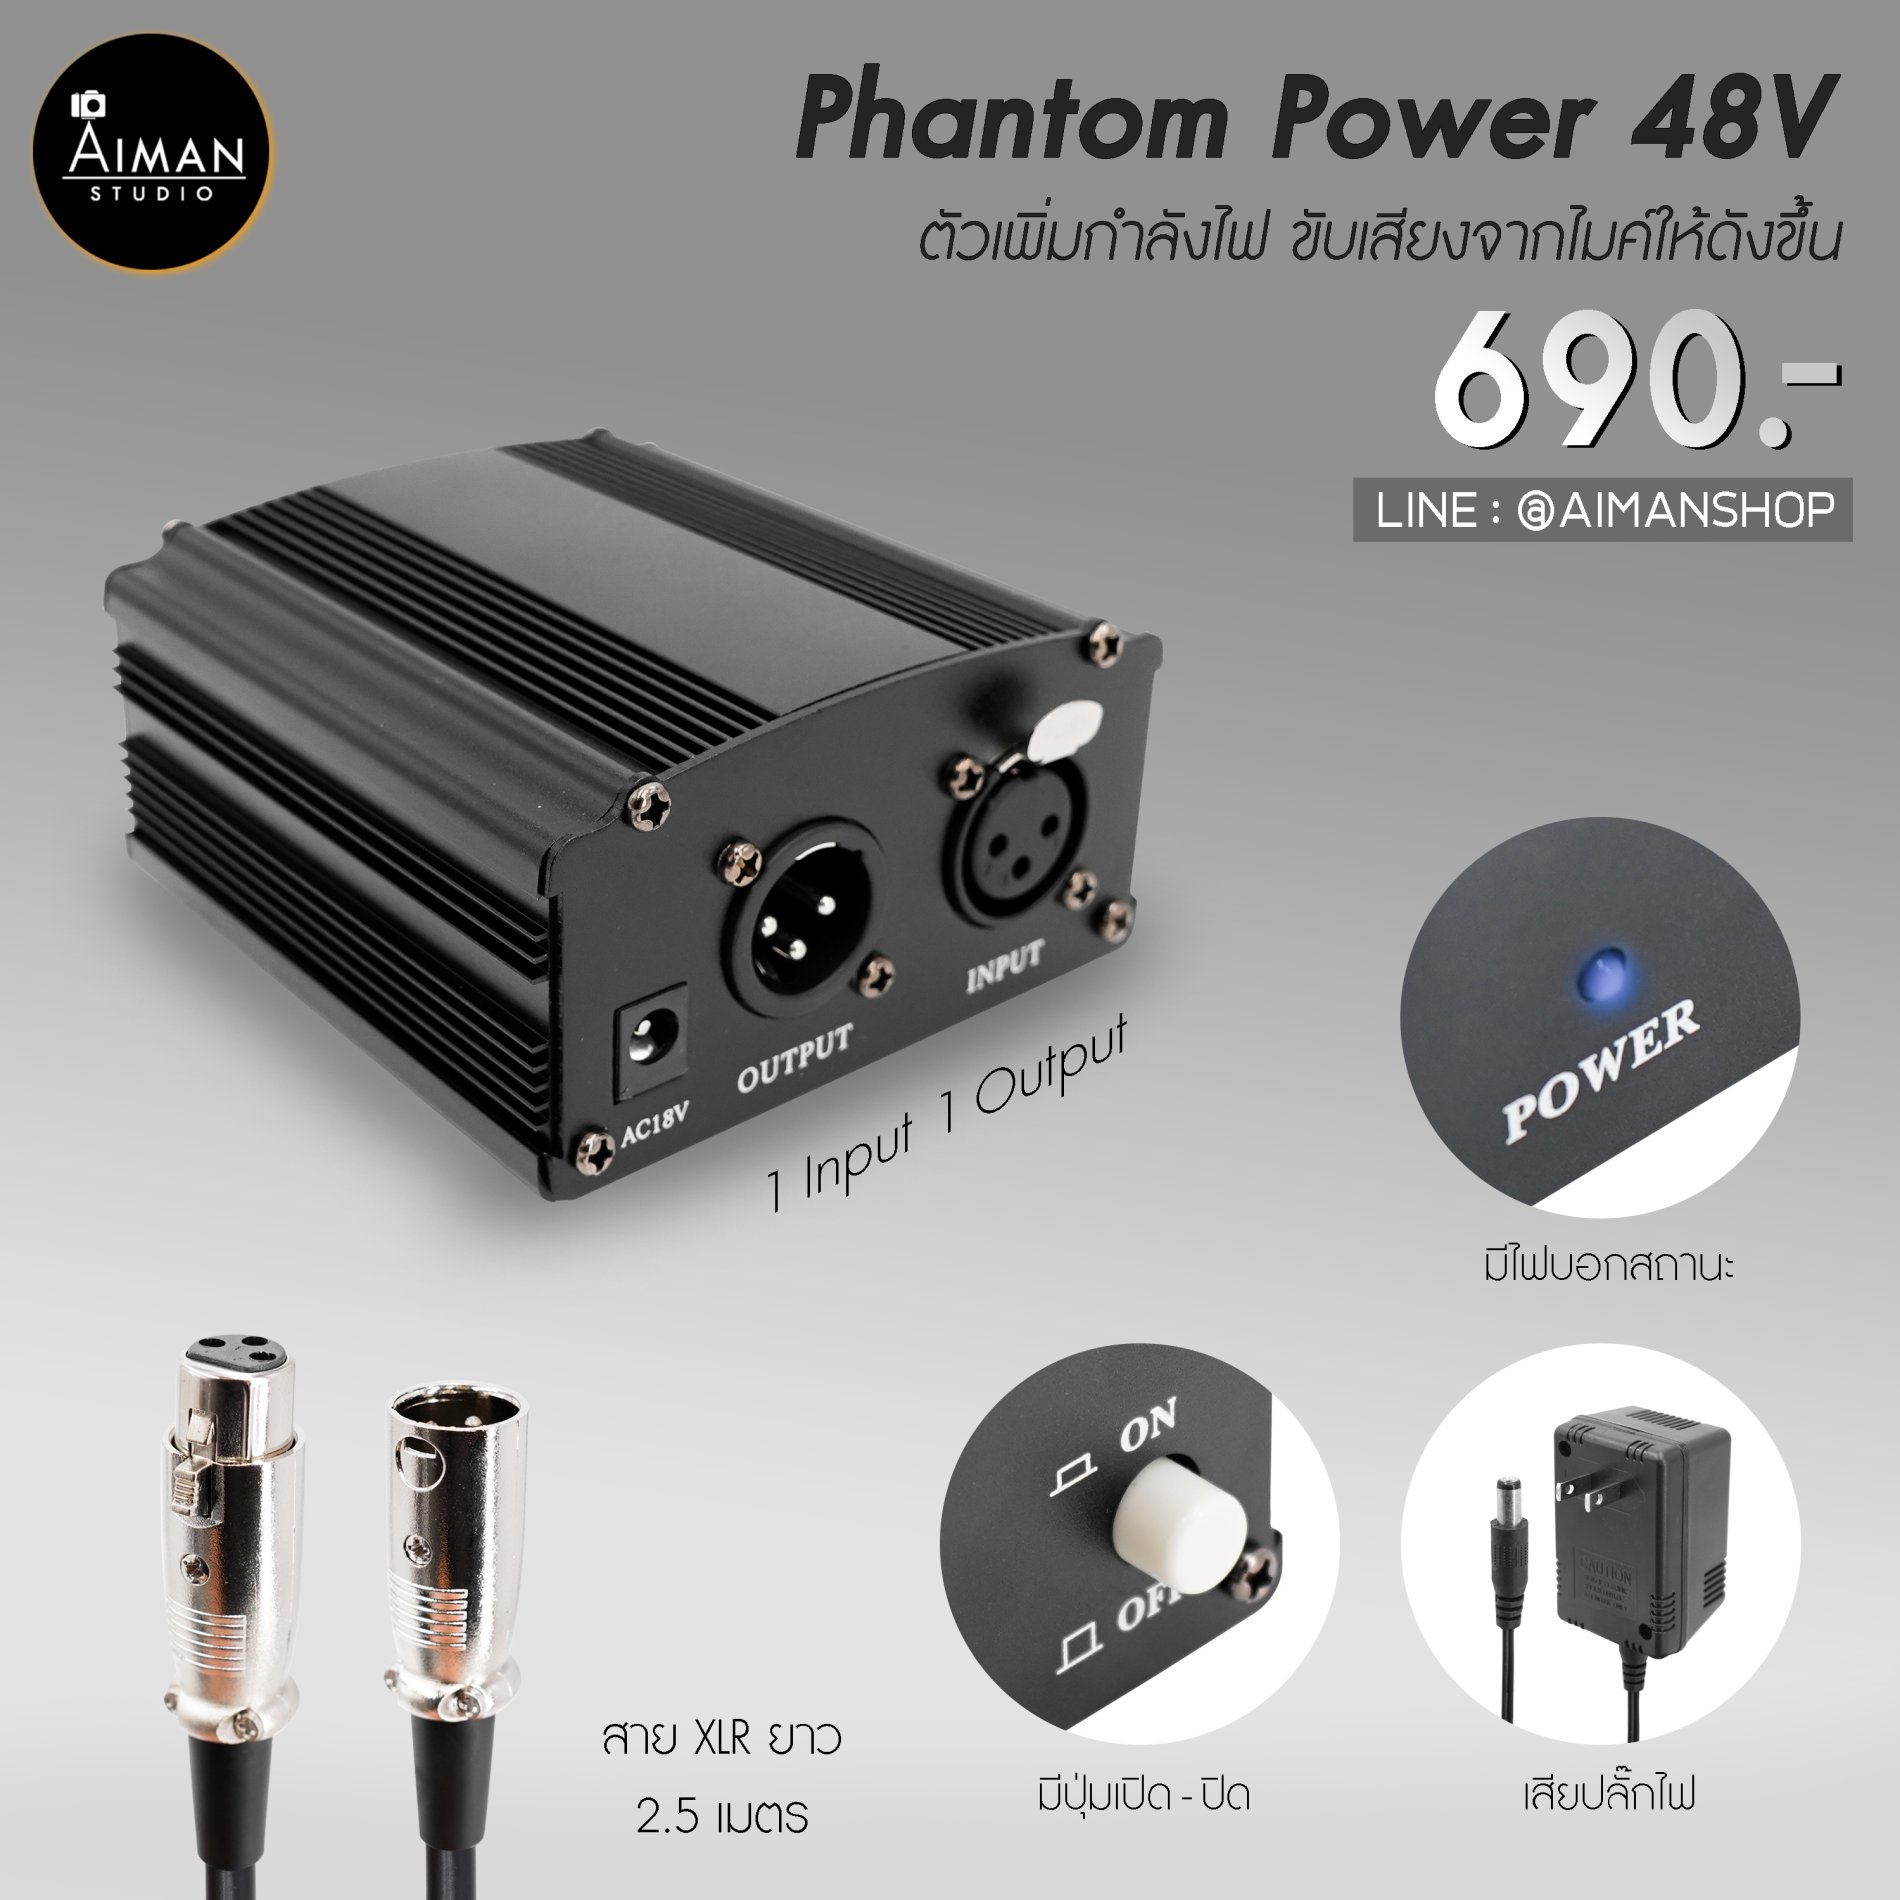 จำหน่าย Phantom Power 48V ตัวเพิ่มกำลังไฟ ขับเสียงไมค์ให้ดังขึ้น